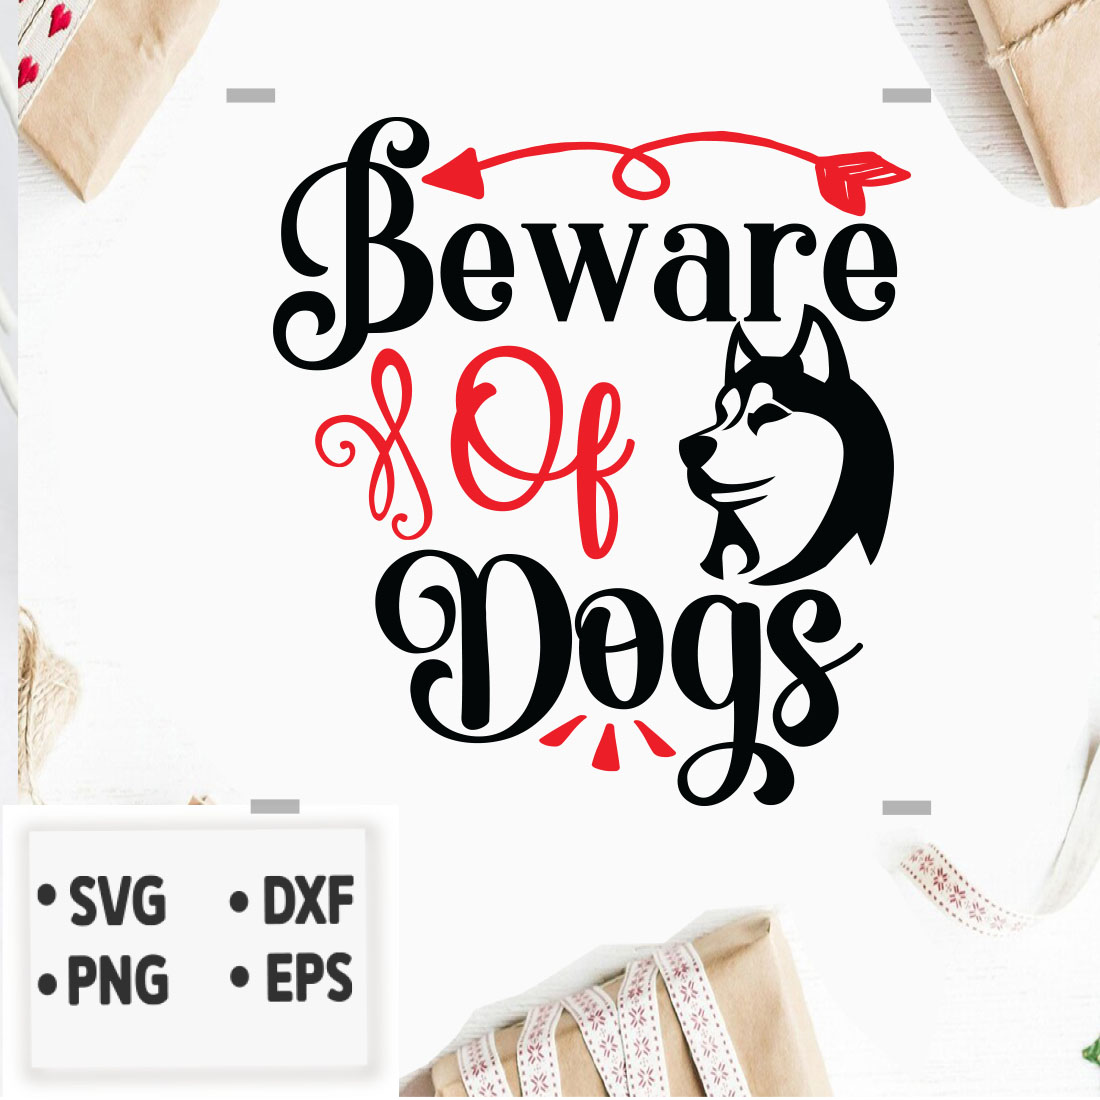 Dog SVG T-shirt Design Bundle cover image.